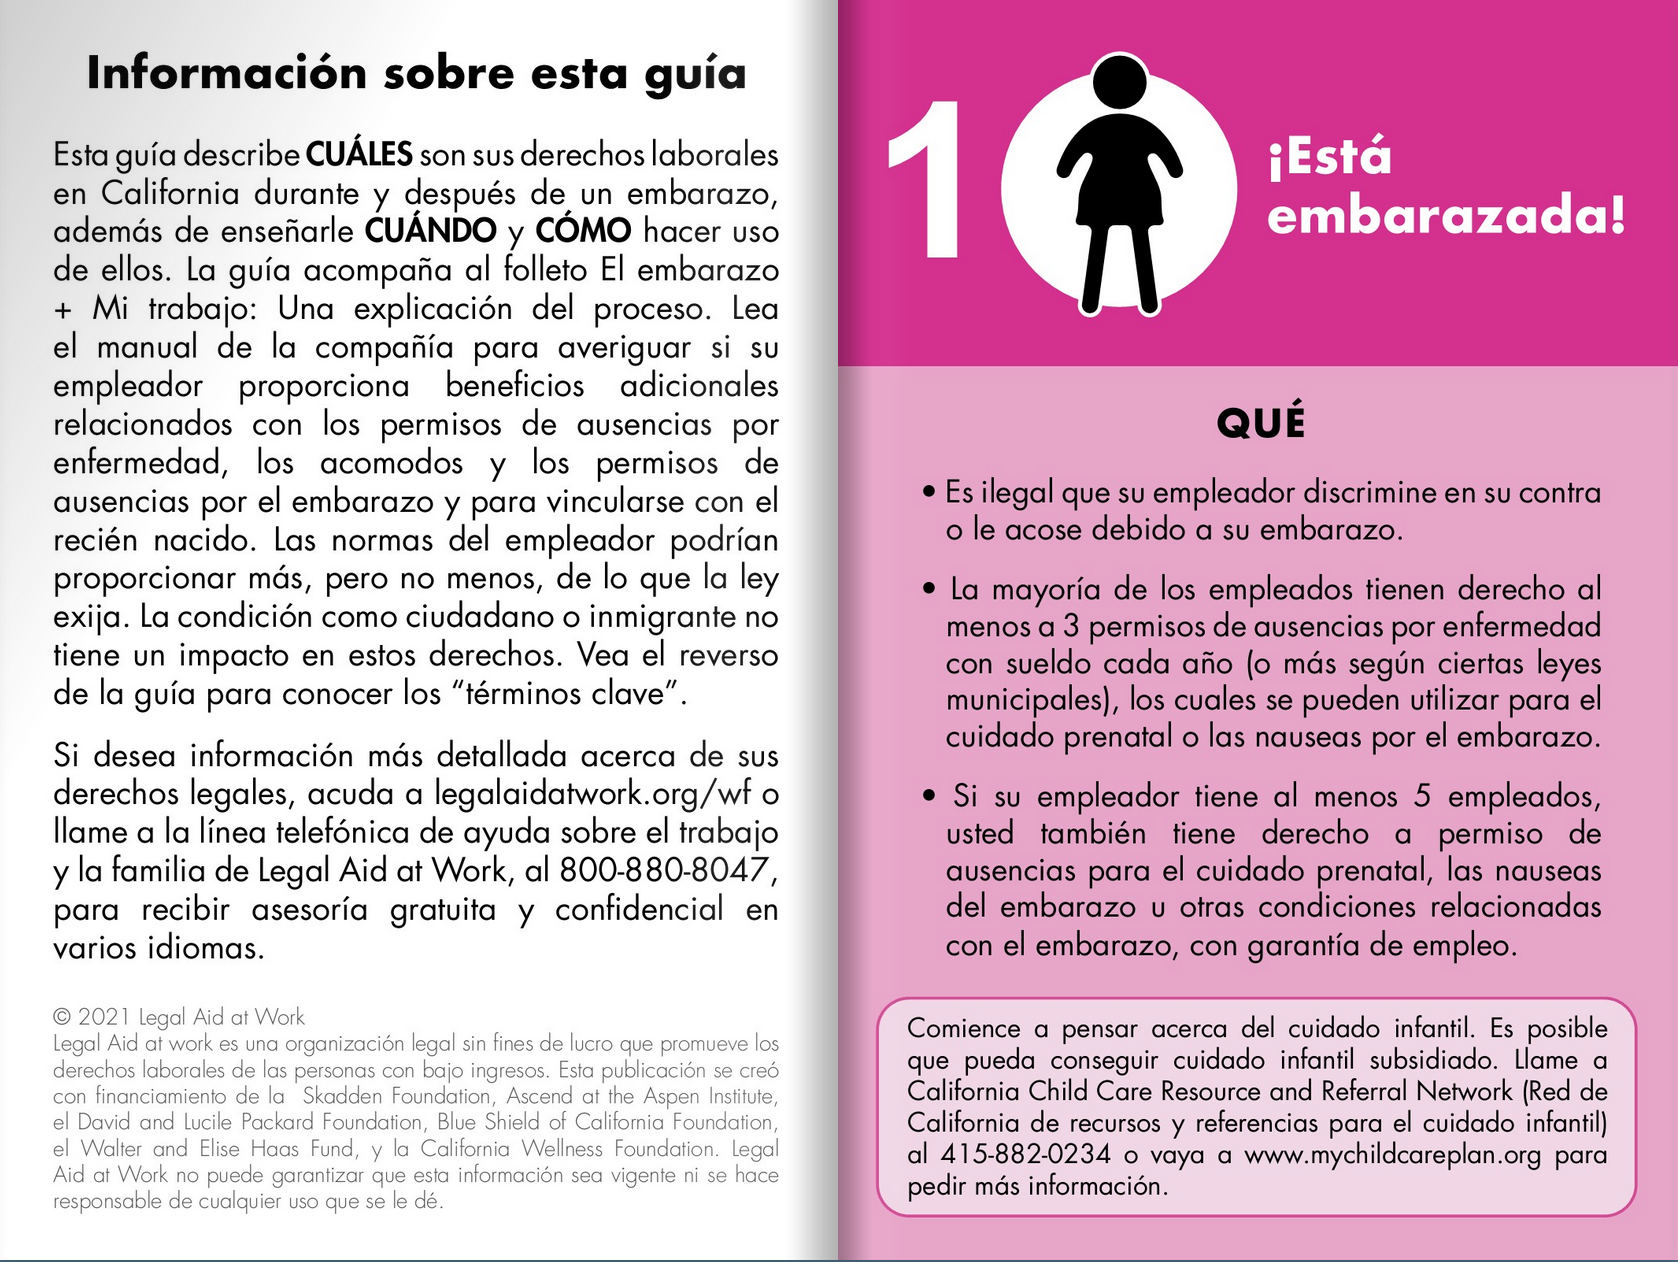 Haga clic aquí para ver la hoja de ruta del embarazo; Imagen de un libro abierto con el lado derecho en rosa y un icono de una mujer embarazada.